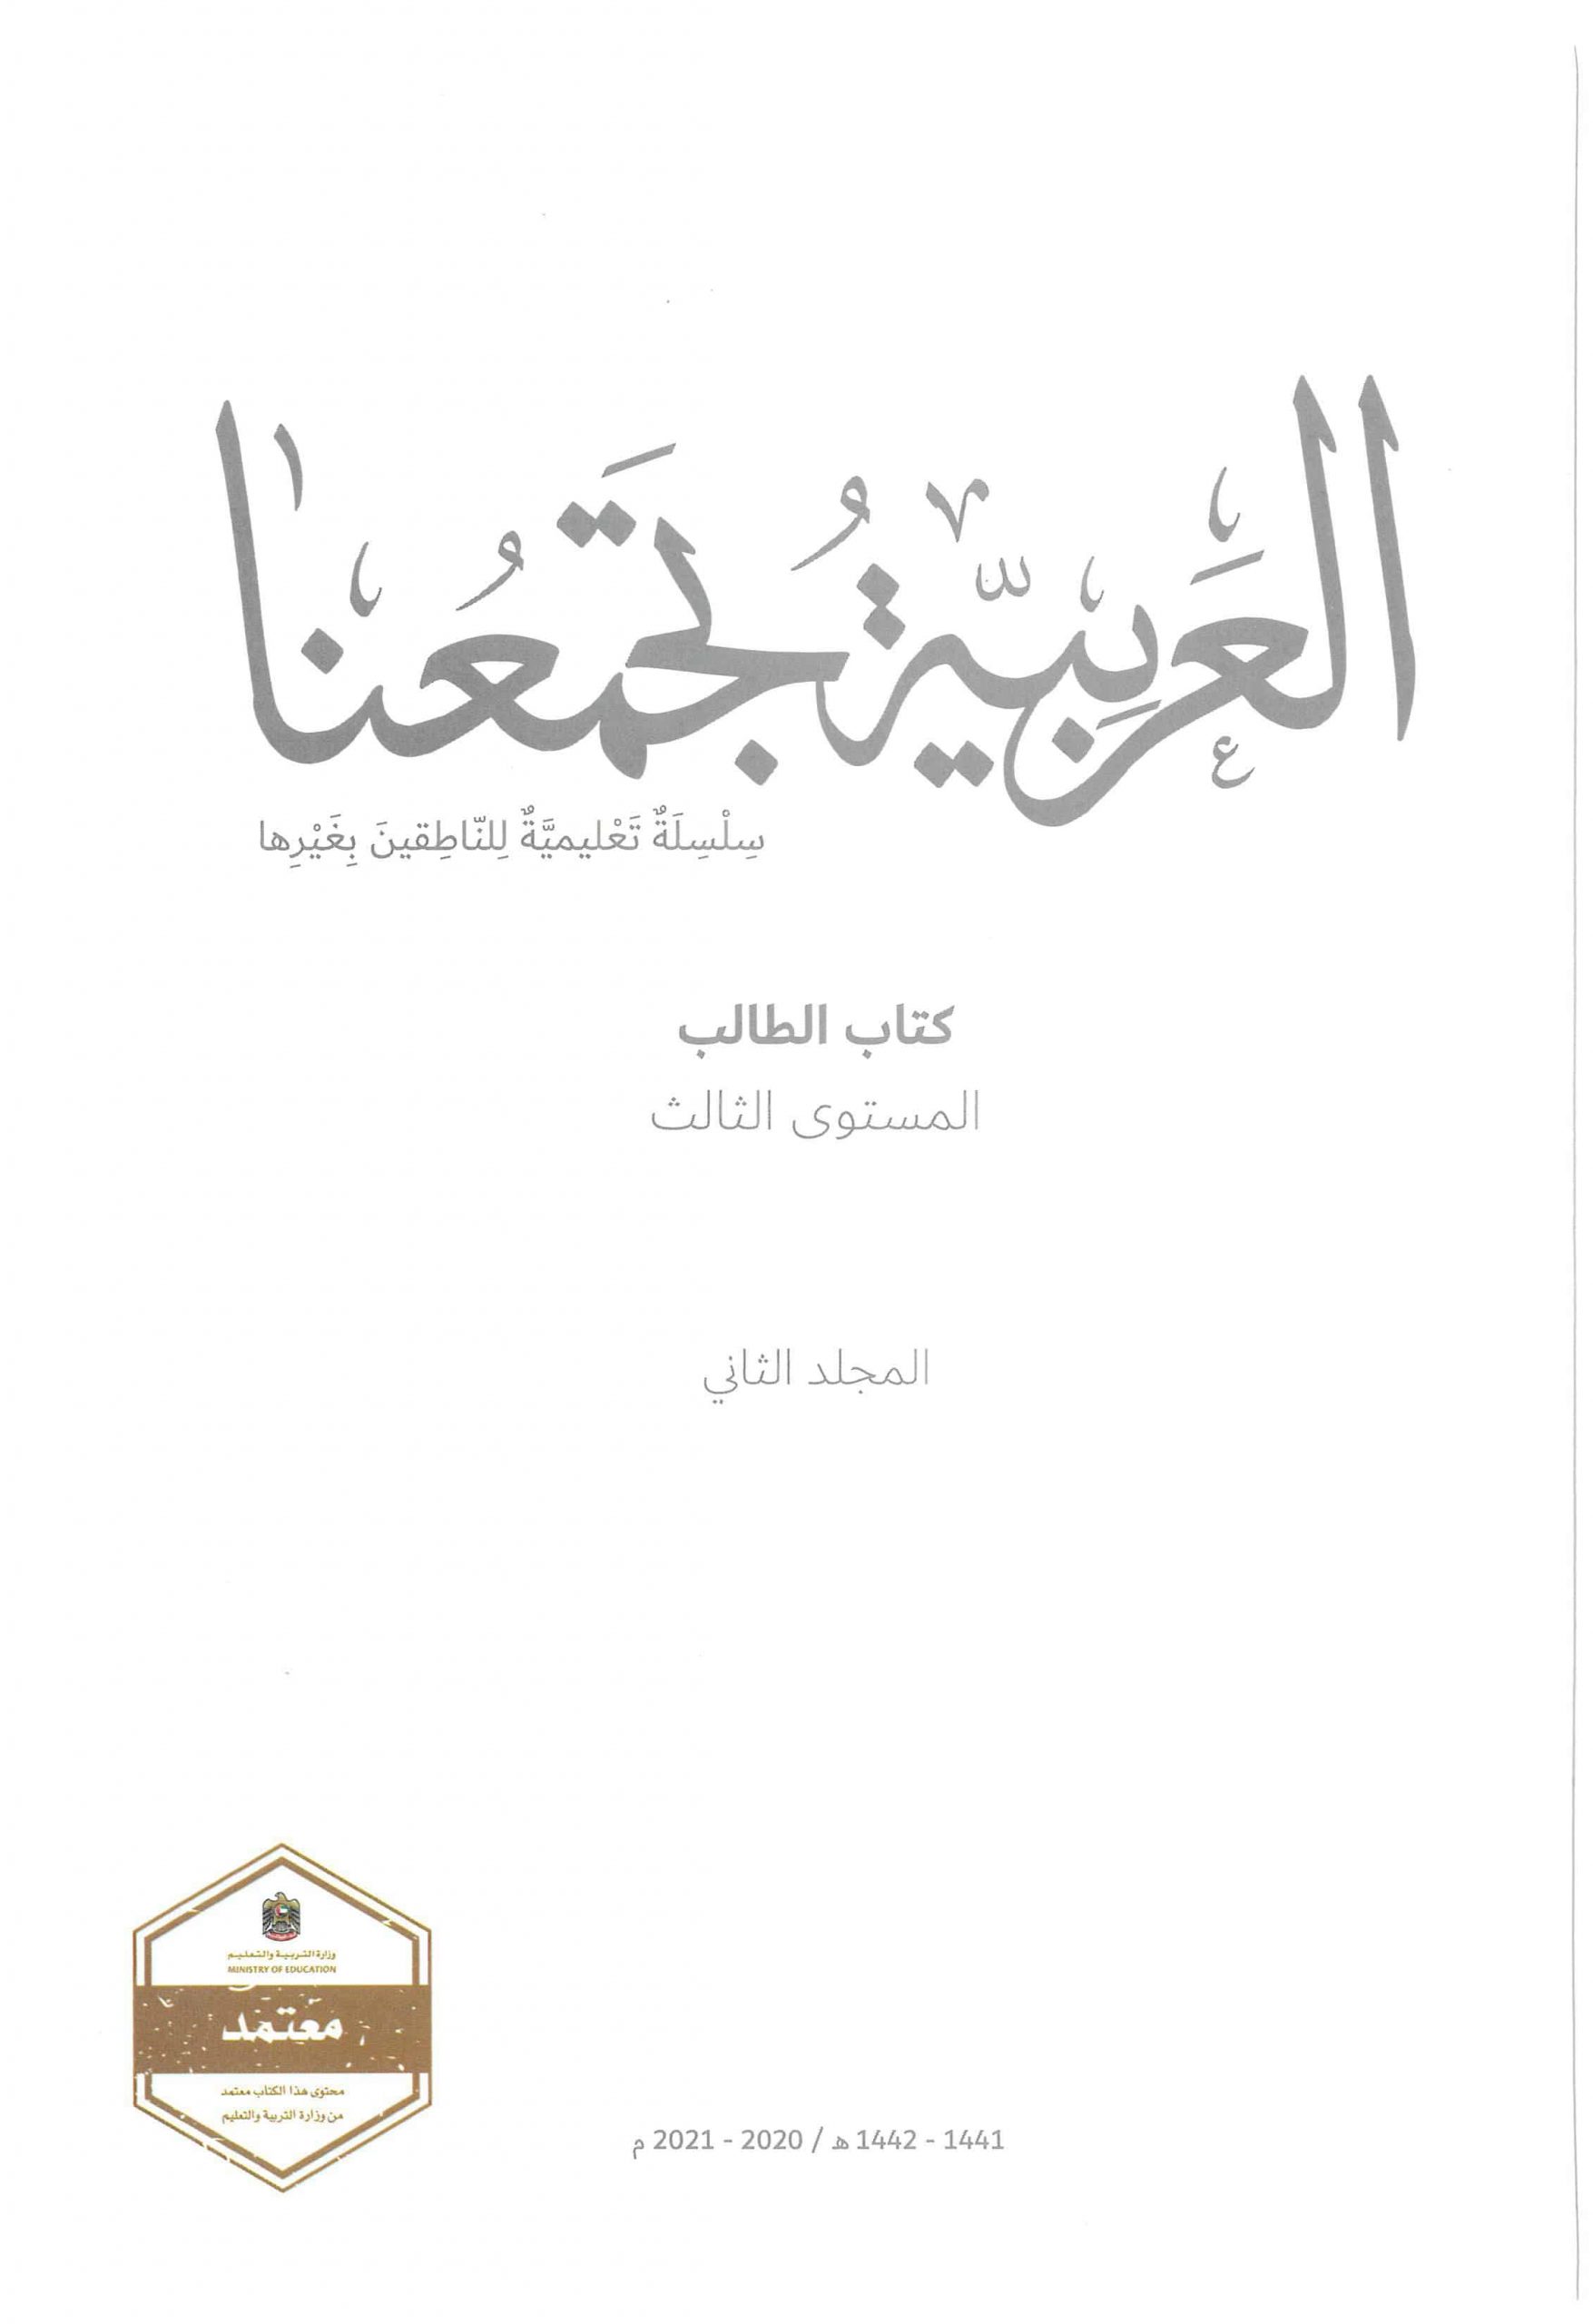 كتاب الطالب الفصل الدراسي الثاني 2020-2021 لغير الناطقين بها الصف الثالث مادة اللغة العربية 